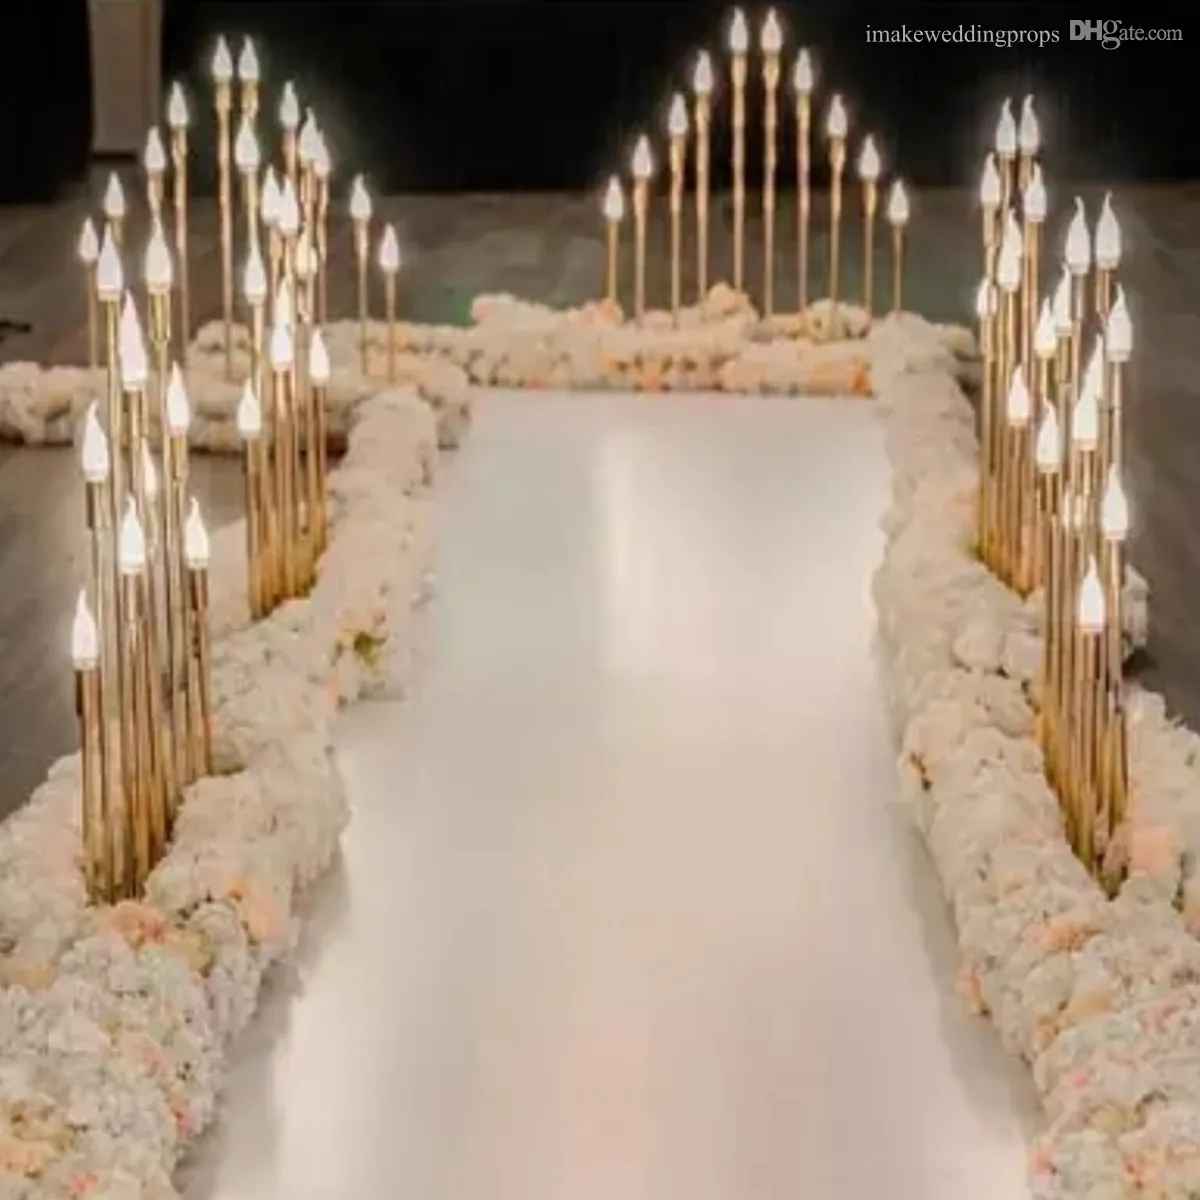 Decoração Decoração da passarela de casamento com pands de velas Wedding Wedding Gold Candlelit Walkway New Style High Heads Led Candle Light IMAKE660